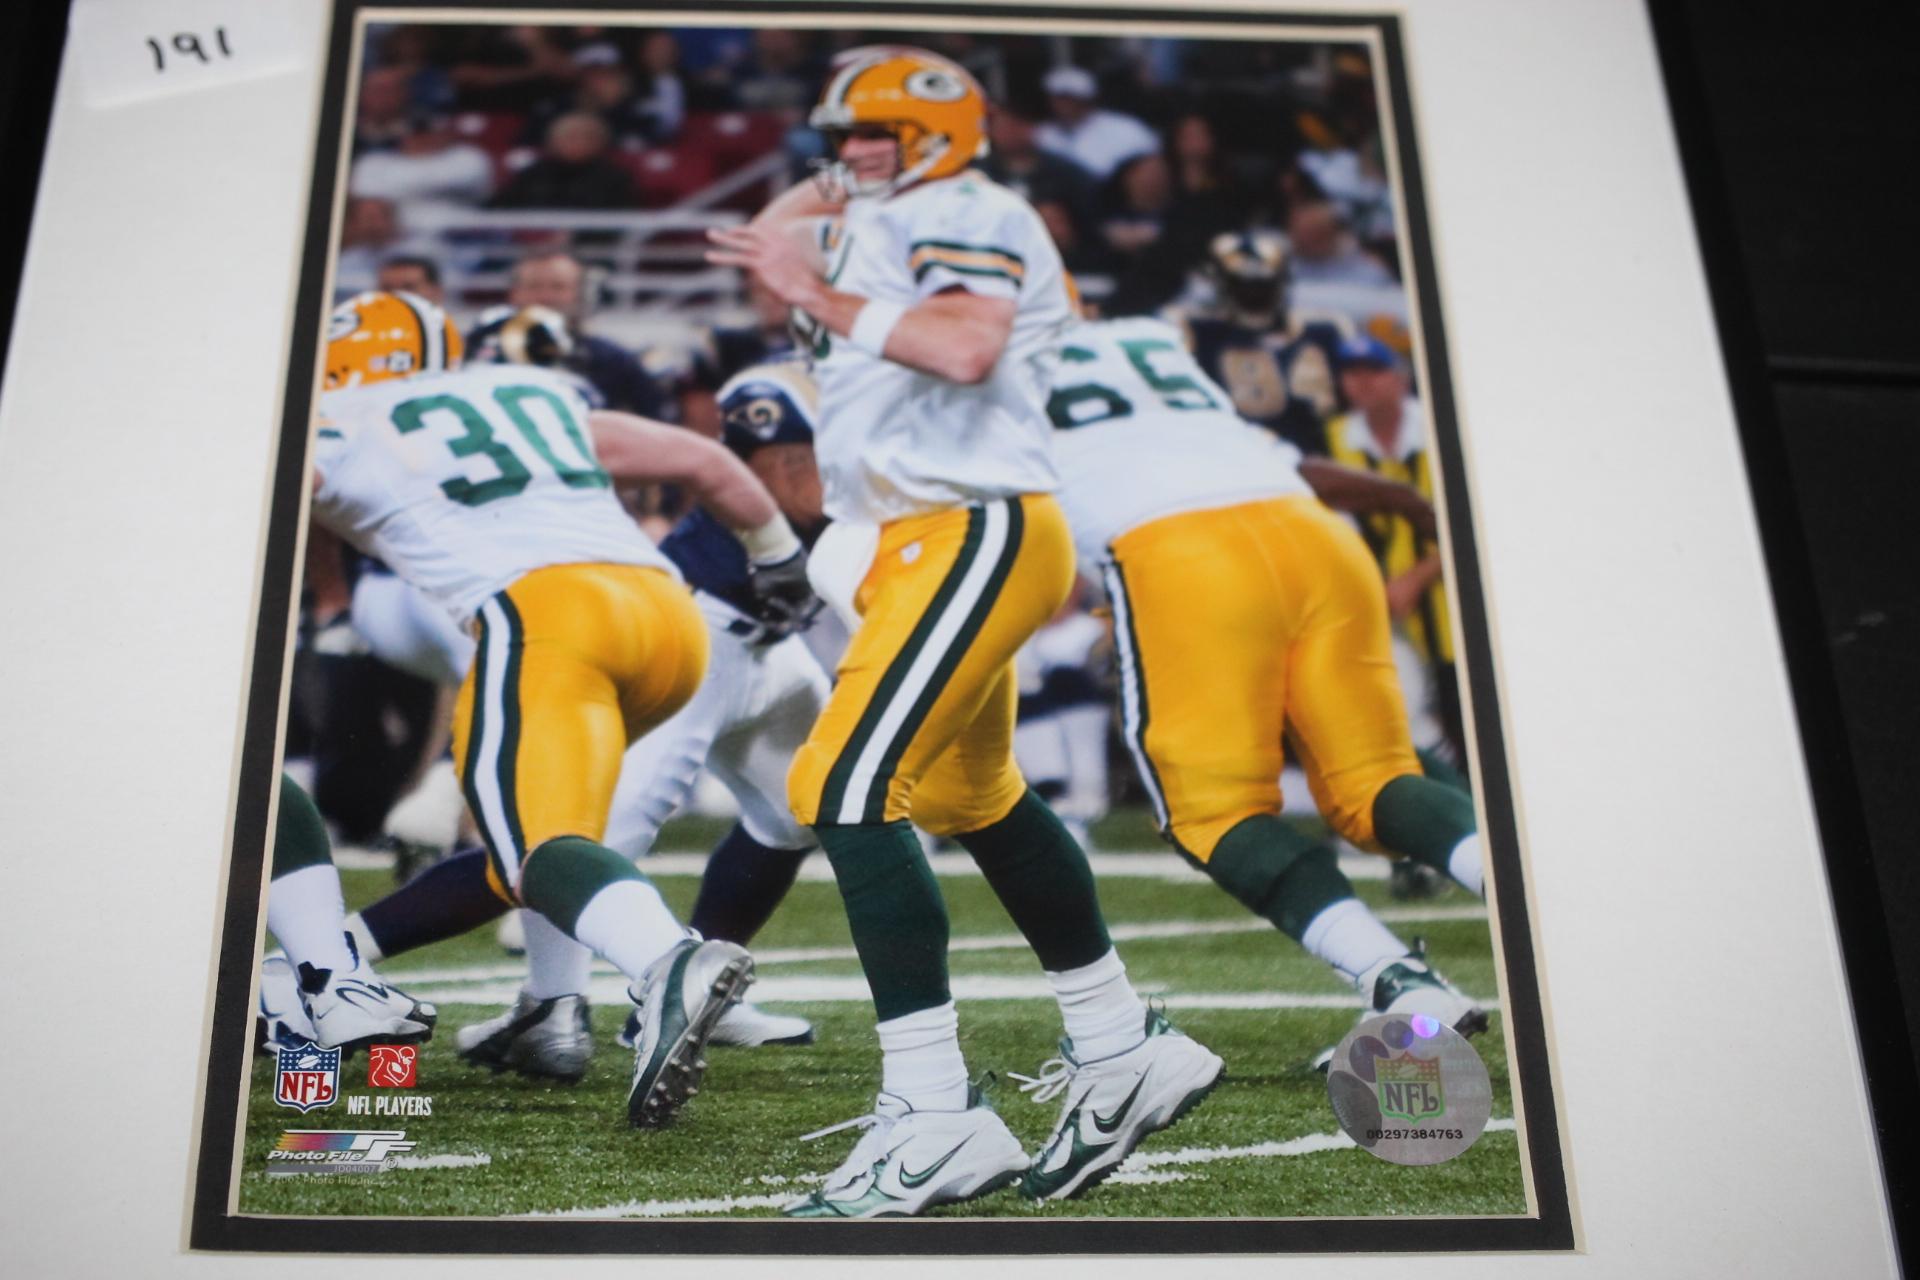 Framed & Matted Brett Favre Picture, Passing Yards Leader Envelope, NFL, 16 1/4" x 12 1/4"